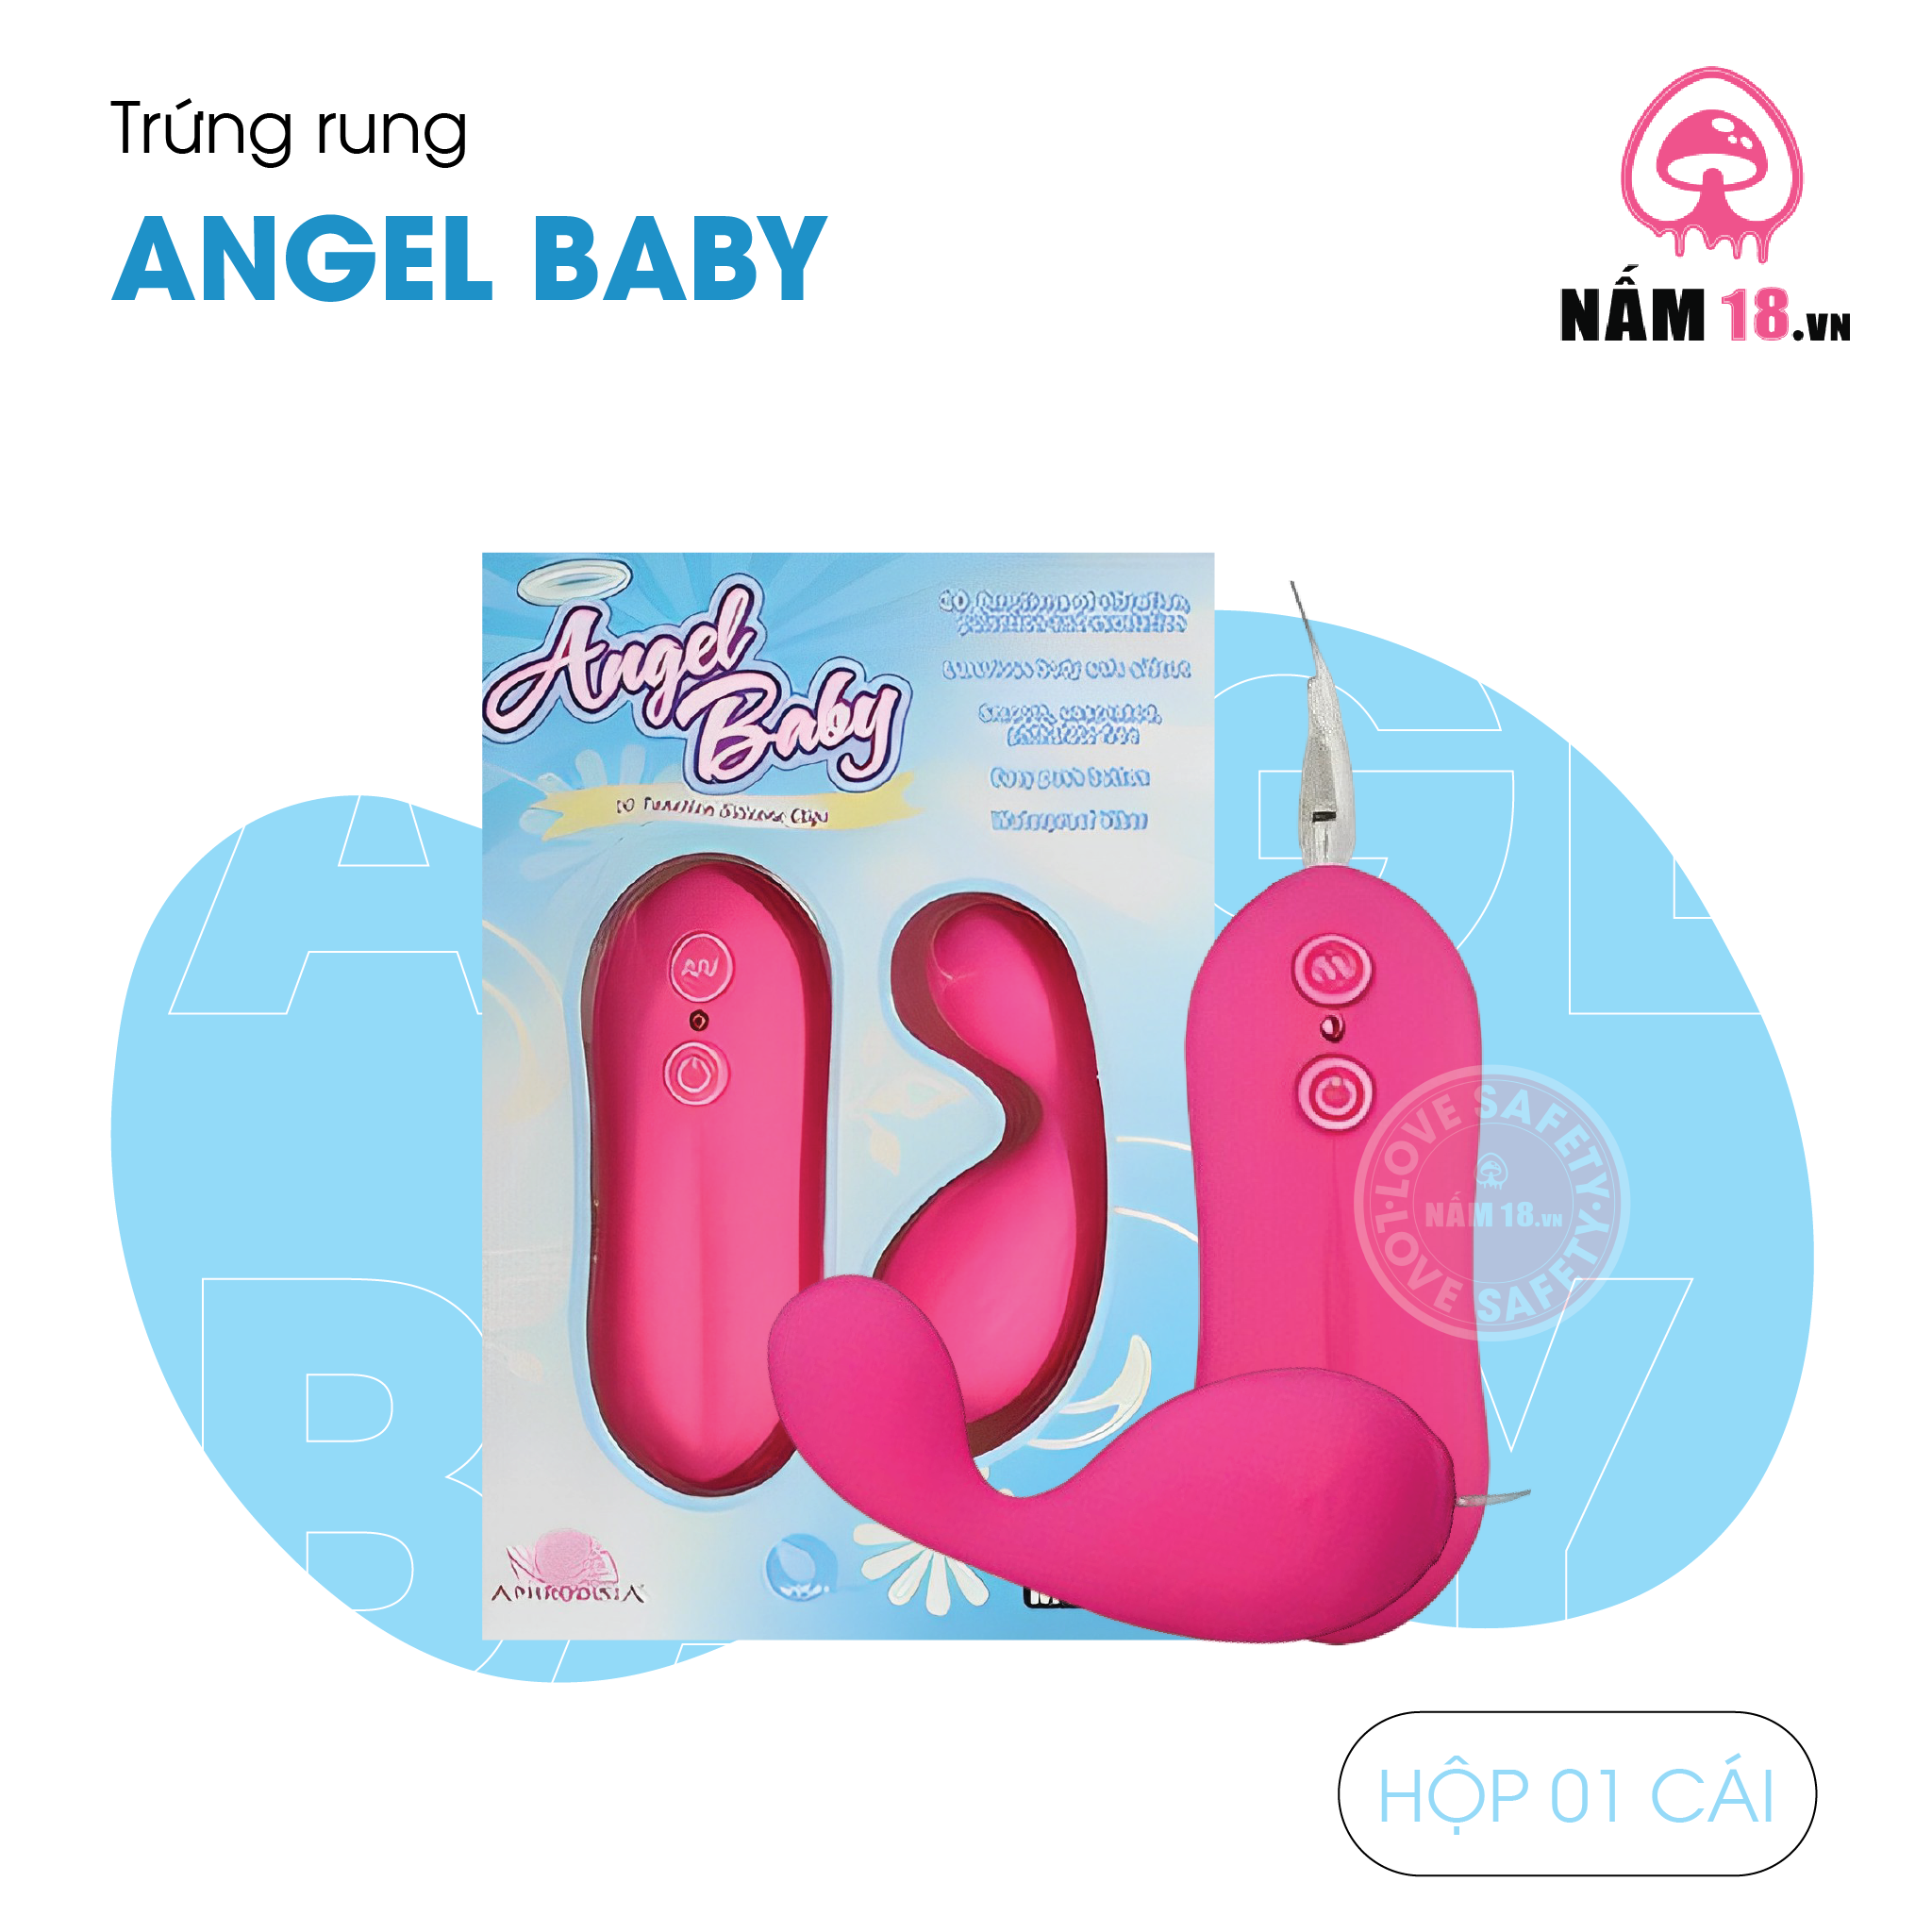  Trứng Rung Angel Baby 10 Chế Độ Rung - Pin 